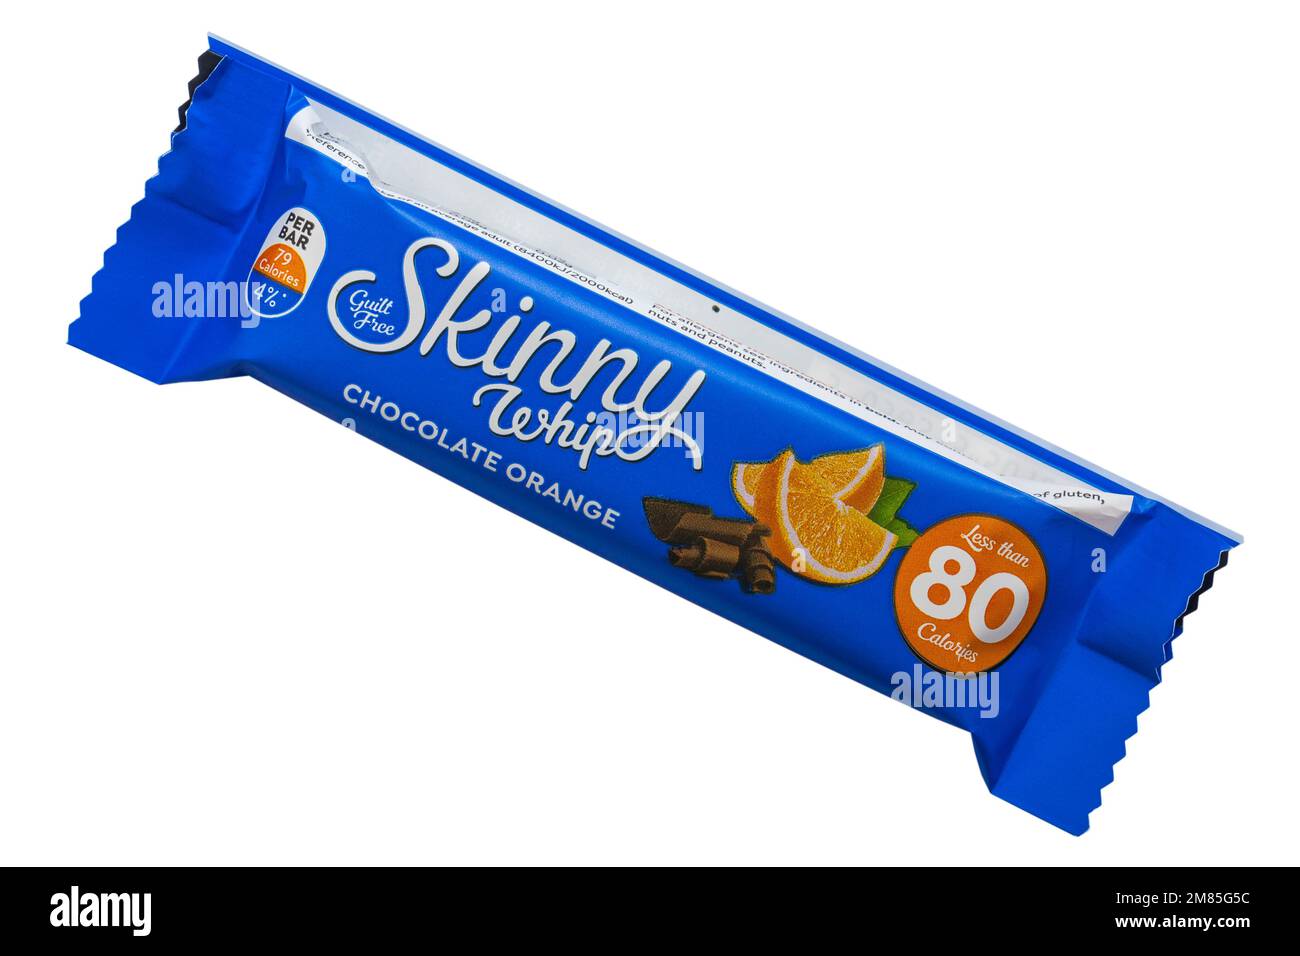 Libre de culpa flaco Whip chocolate naranja snack bar alto en fibra de menos de 80 calorías aisladas sobre fondo blanco Foto de stock